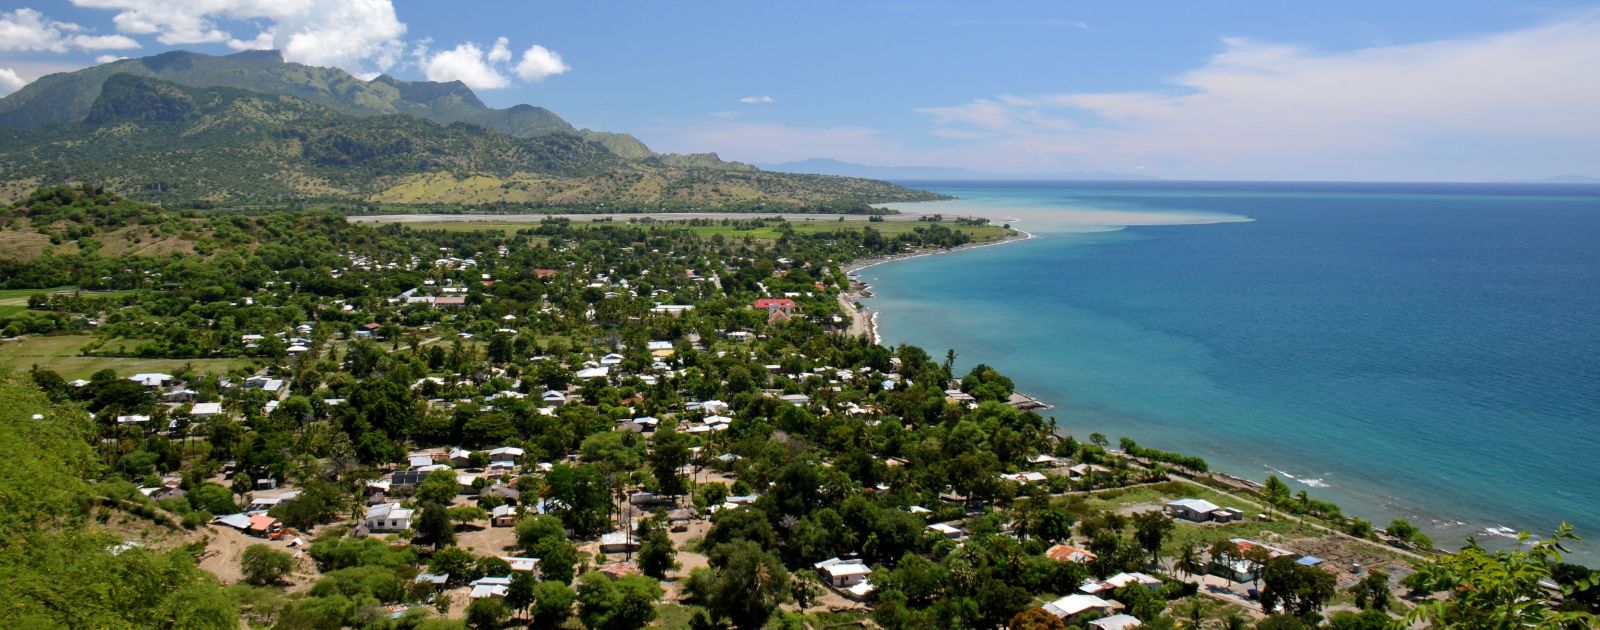 life scene in Timor-Leste